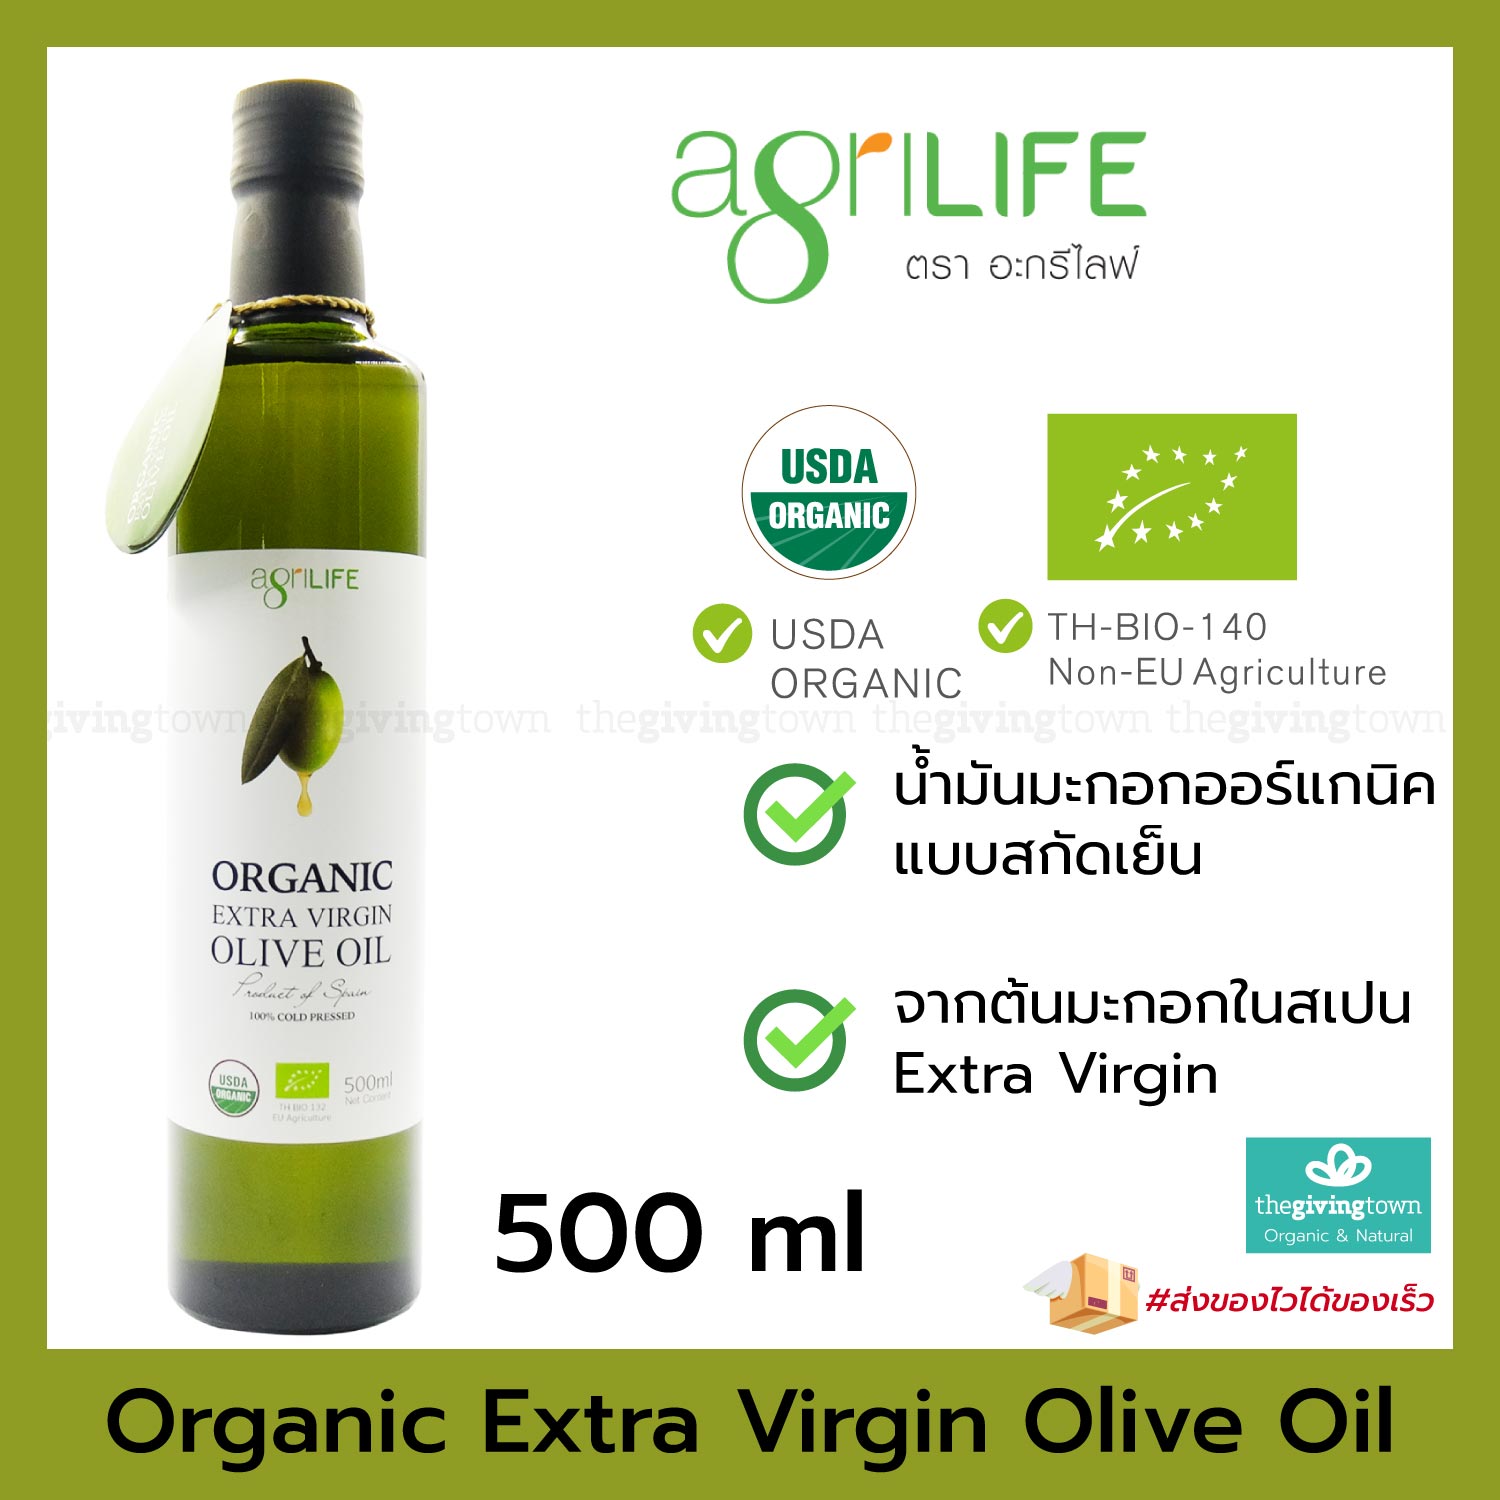 Agrilife - น้ำมันมะกอกออร์แกนิค 500 ml Organic Extra Virgin Olive Oil 500 มล.  ORGANIC โอลีฟออยล์ น้ำมันโอลีฟ อะกรีไลฟ์ EVOO น้ำมันคีโต สินค้าคีโต, Organic Olive Oil น้ำมันมะกอกสกัดเย็น สำหรับเด็ก เด็กทานได้ 6M+